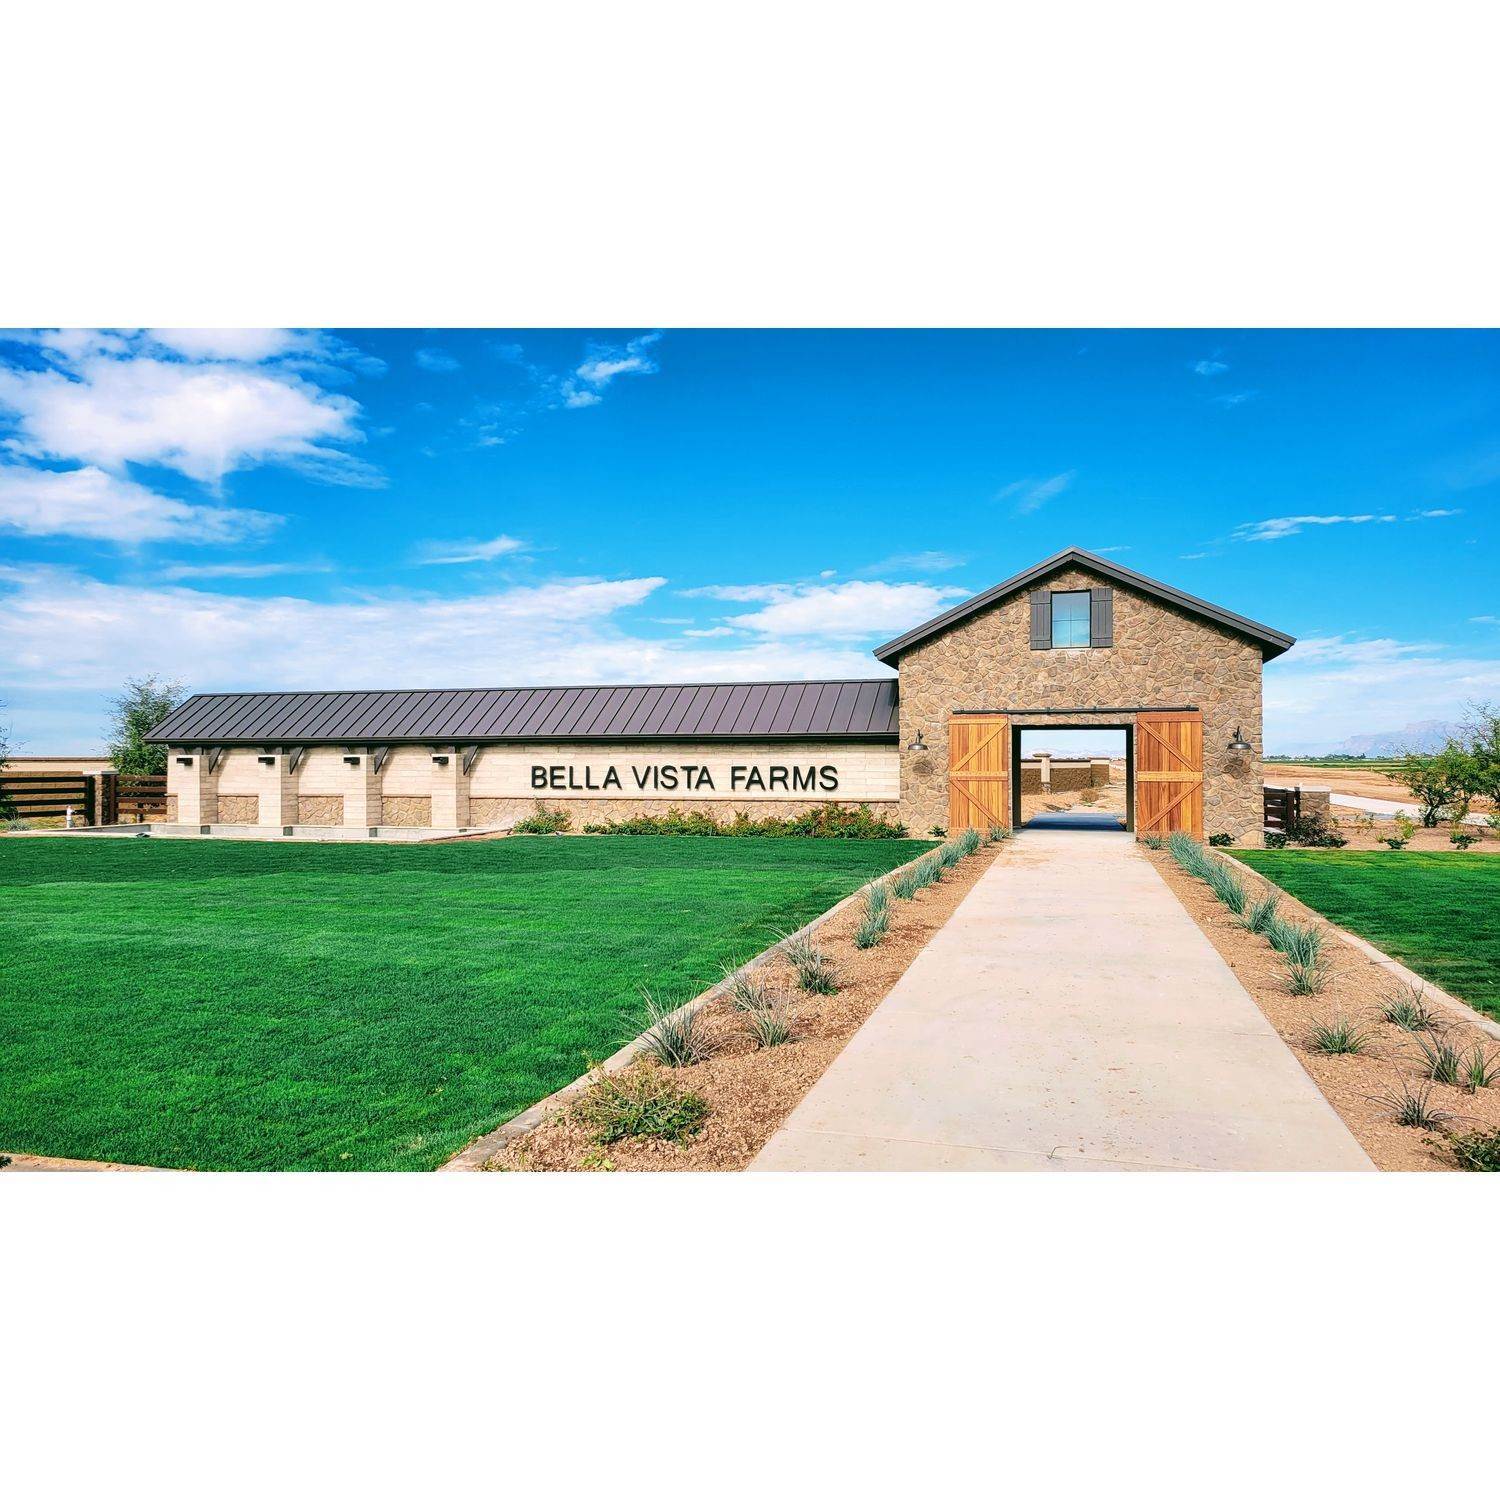 6061 South Oxley, Mesa, AZ 85212에 Bella Vista Farms 건물